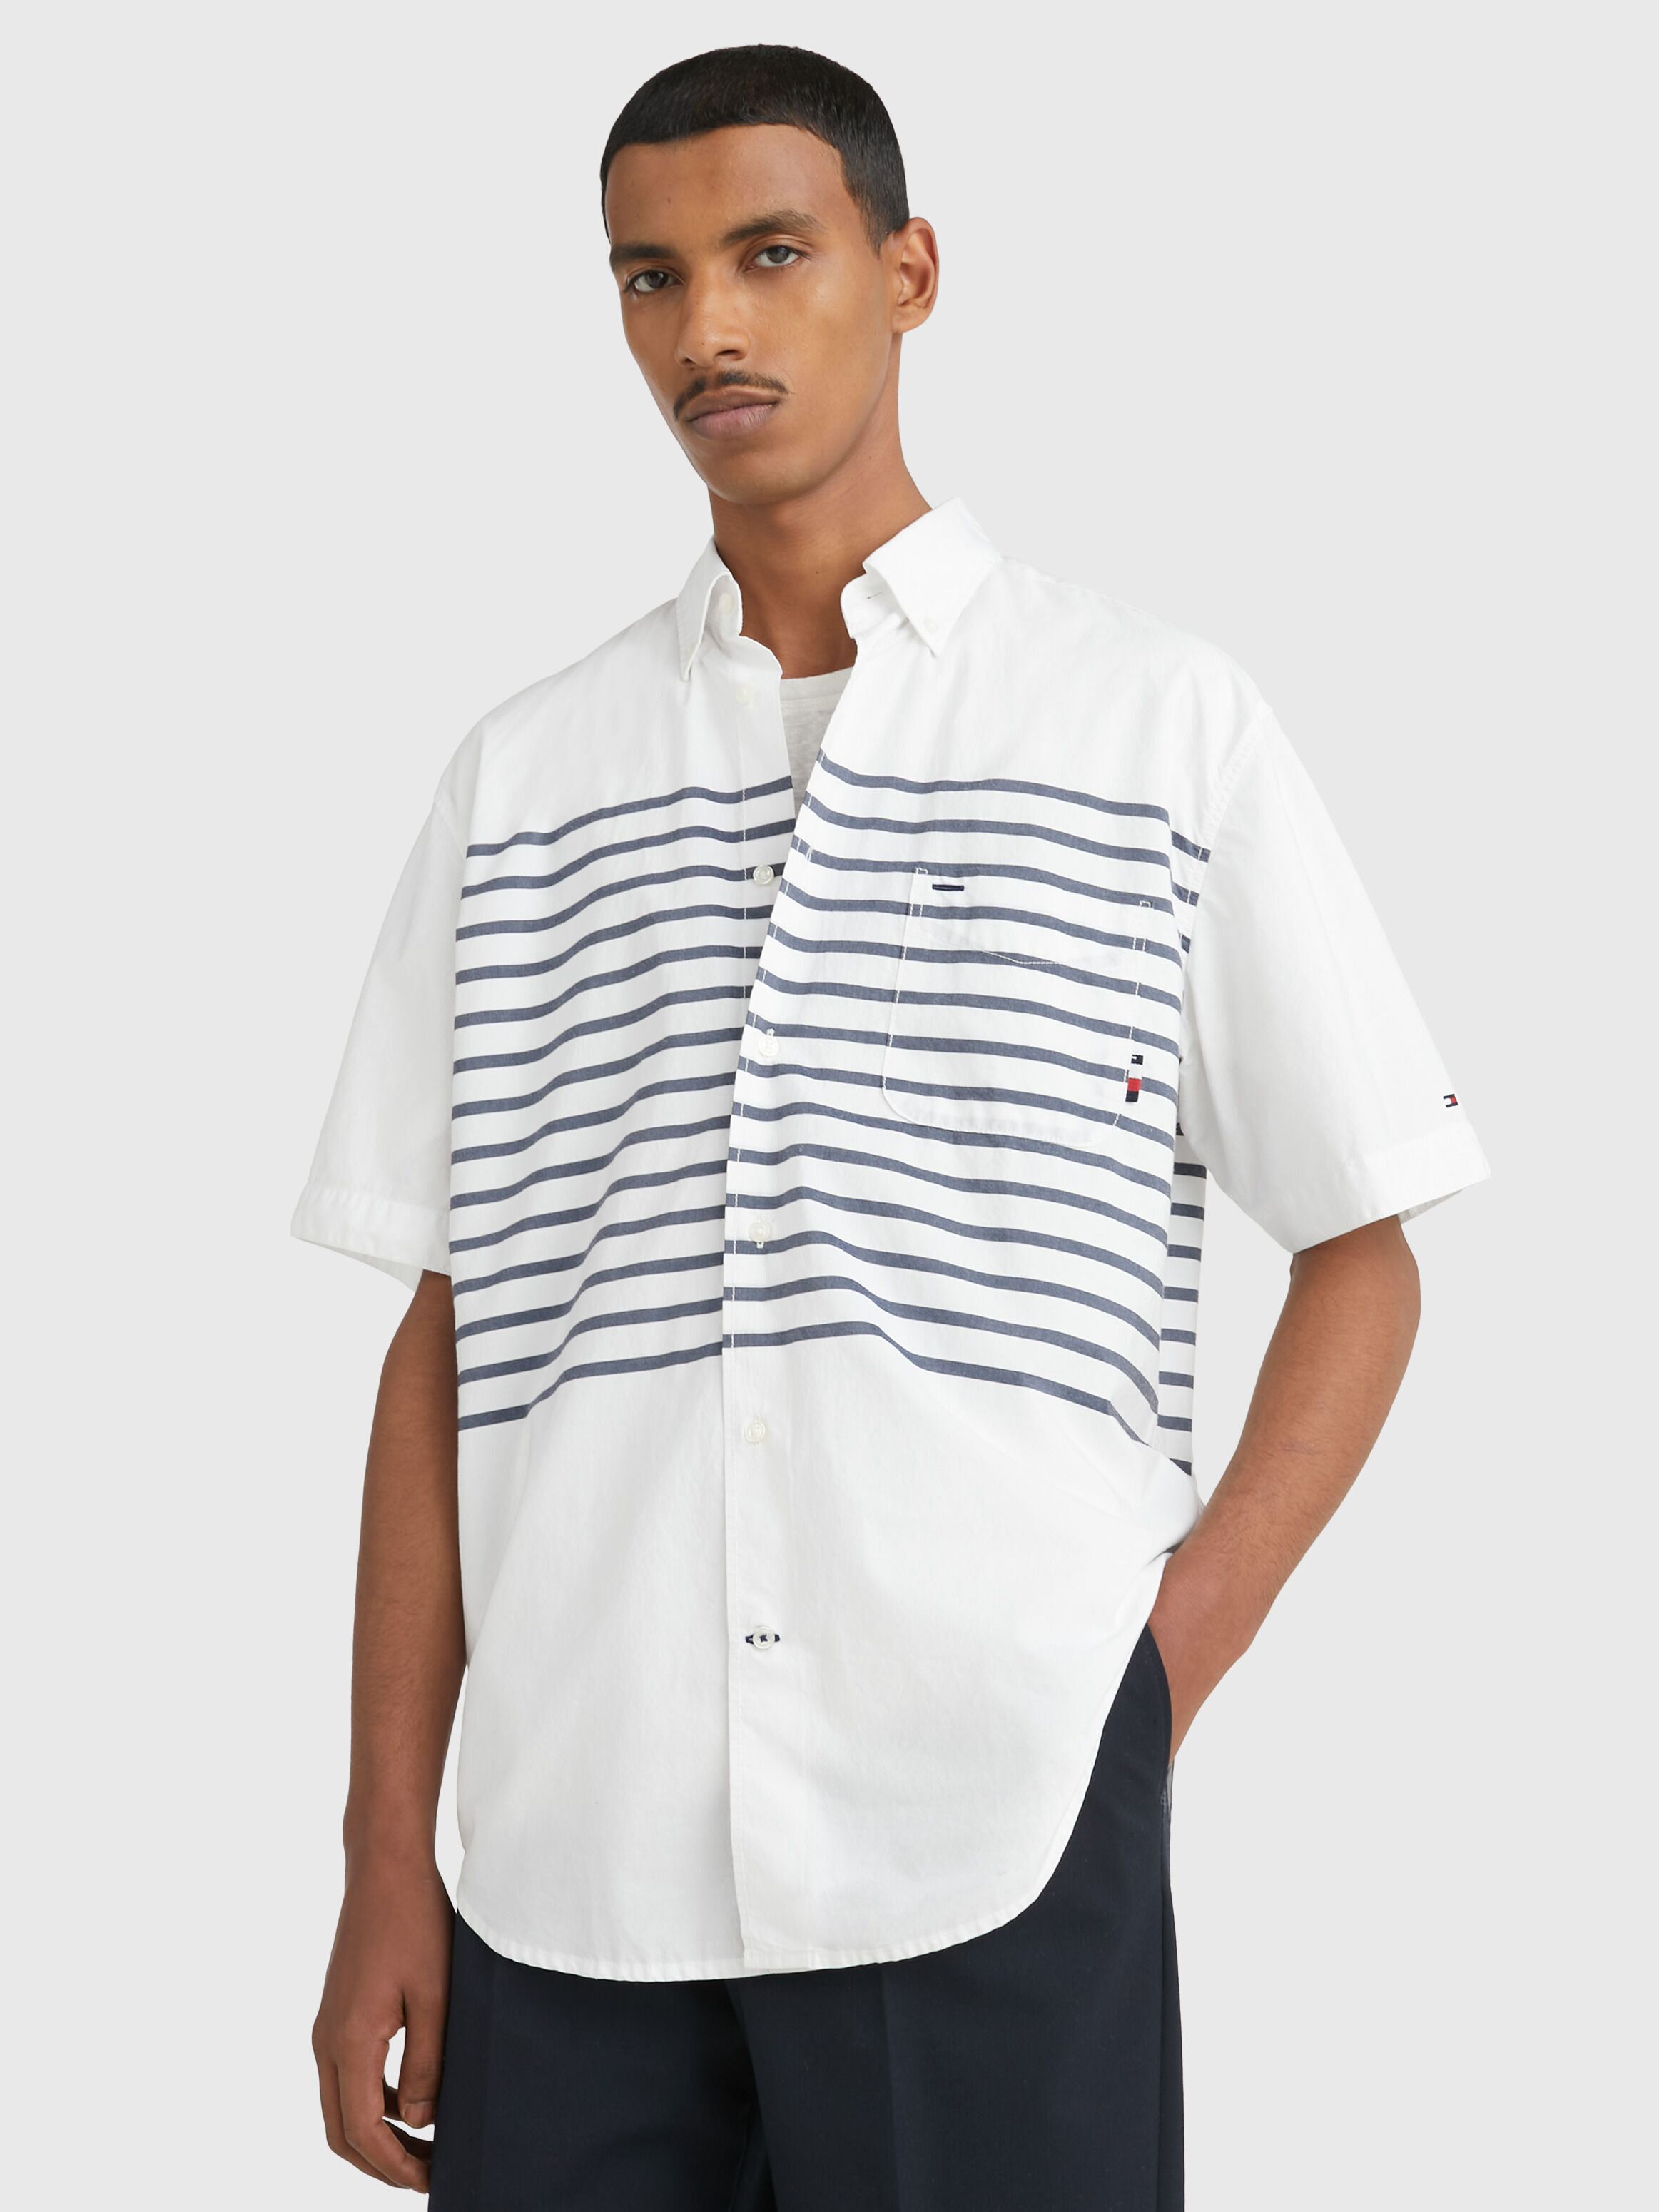 布列塔尼條紋超寬鬆短袖襯衫 Optic White / Carbon Navy